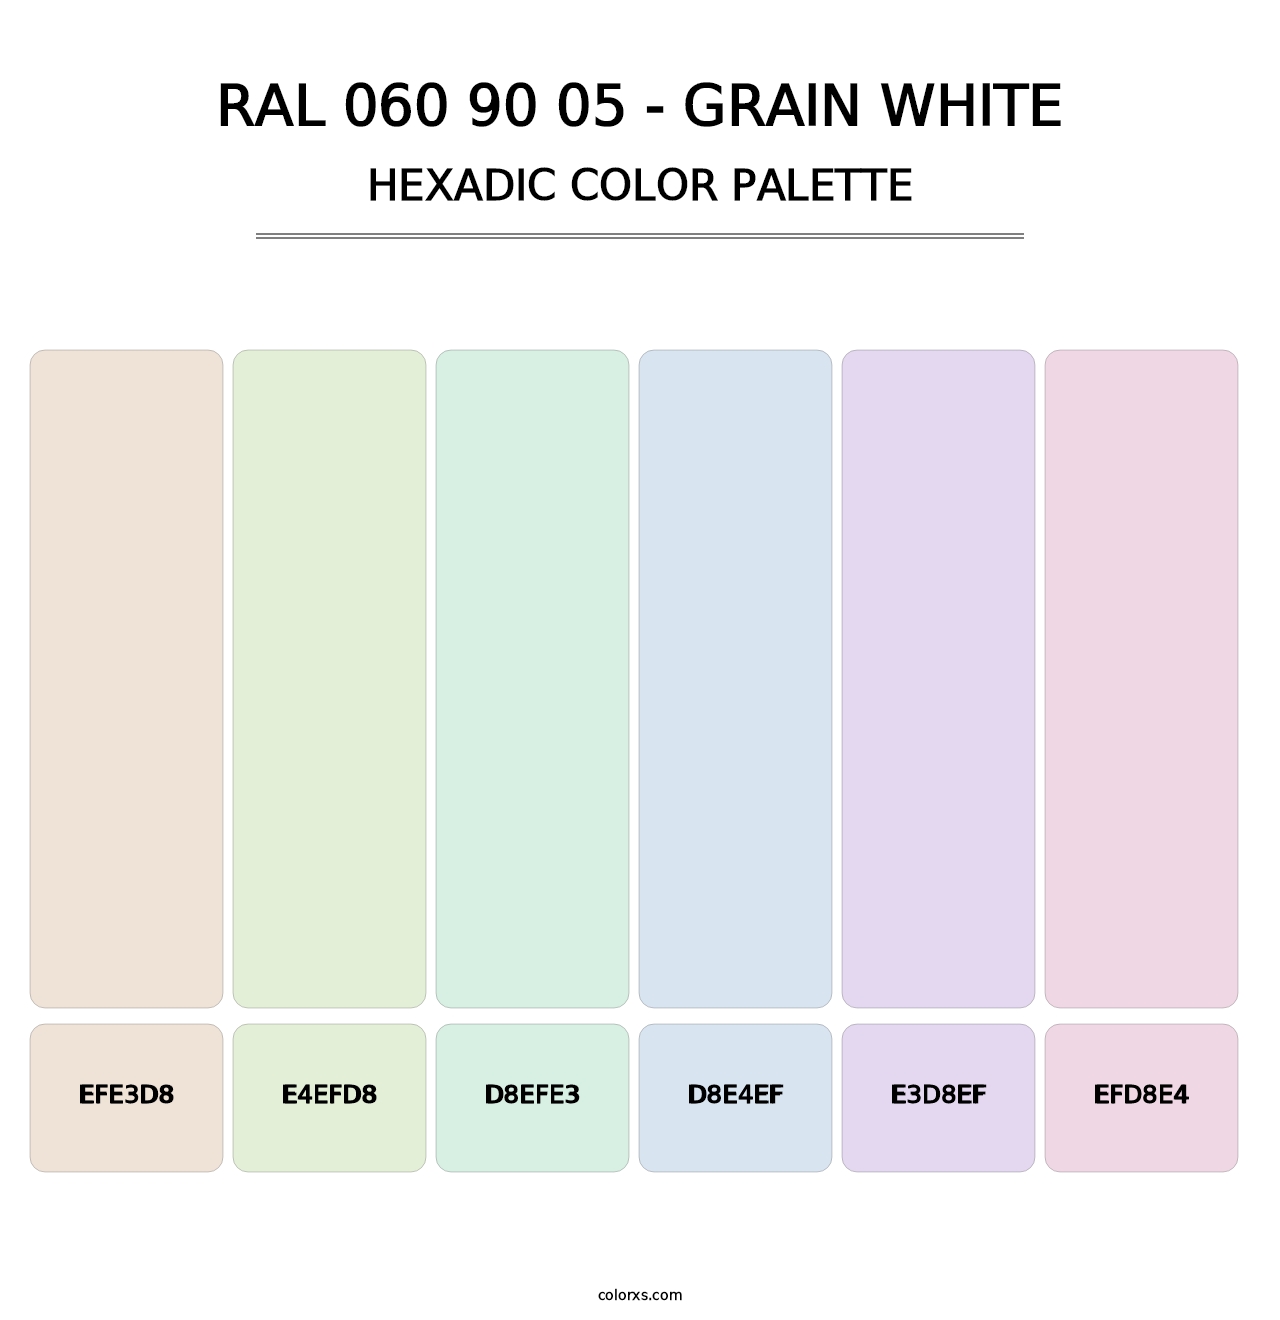 RAL 060 90 05 - Grain White - Hexadic Color Palette